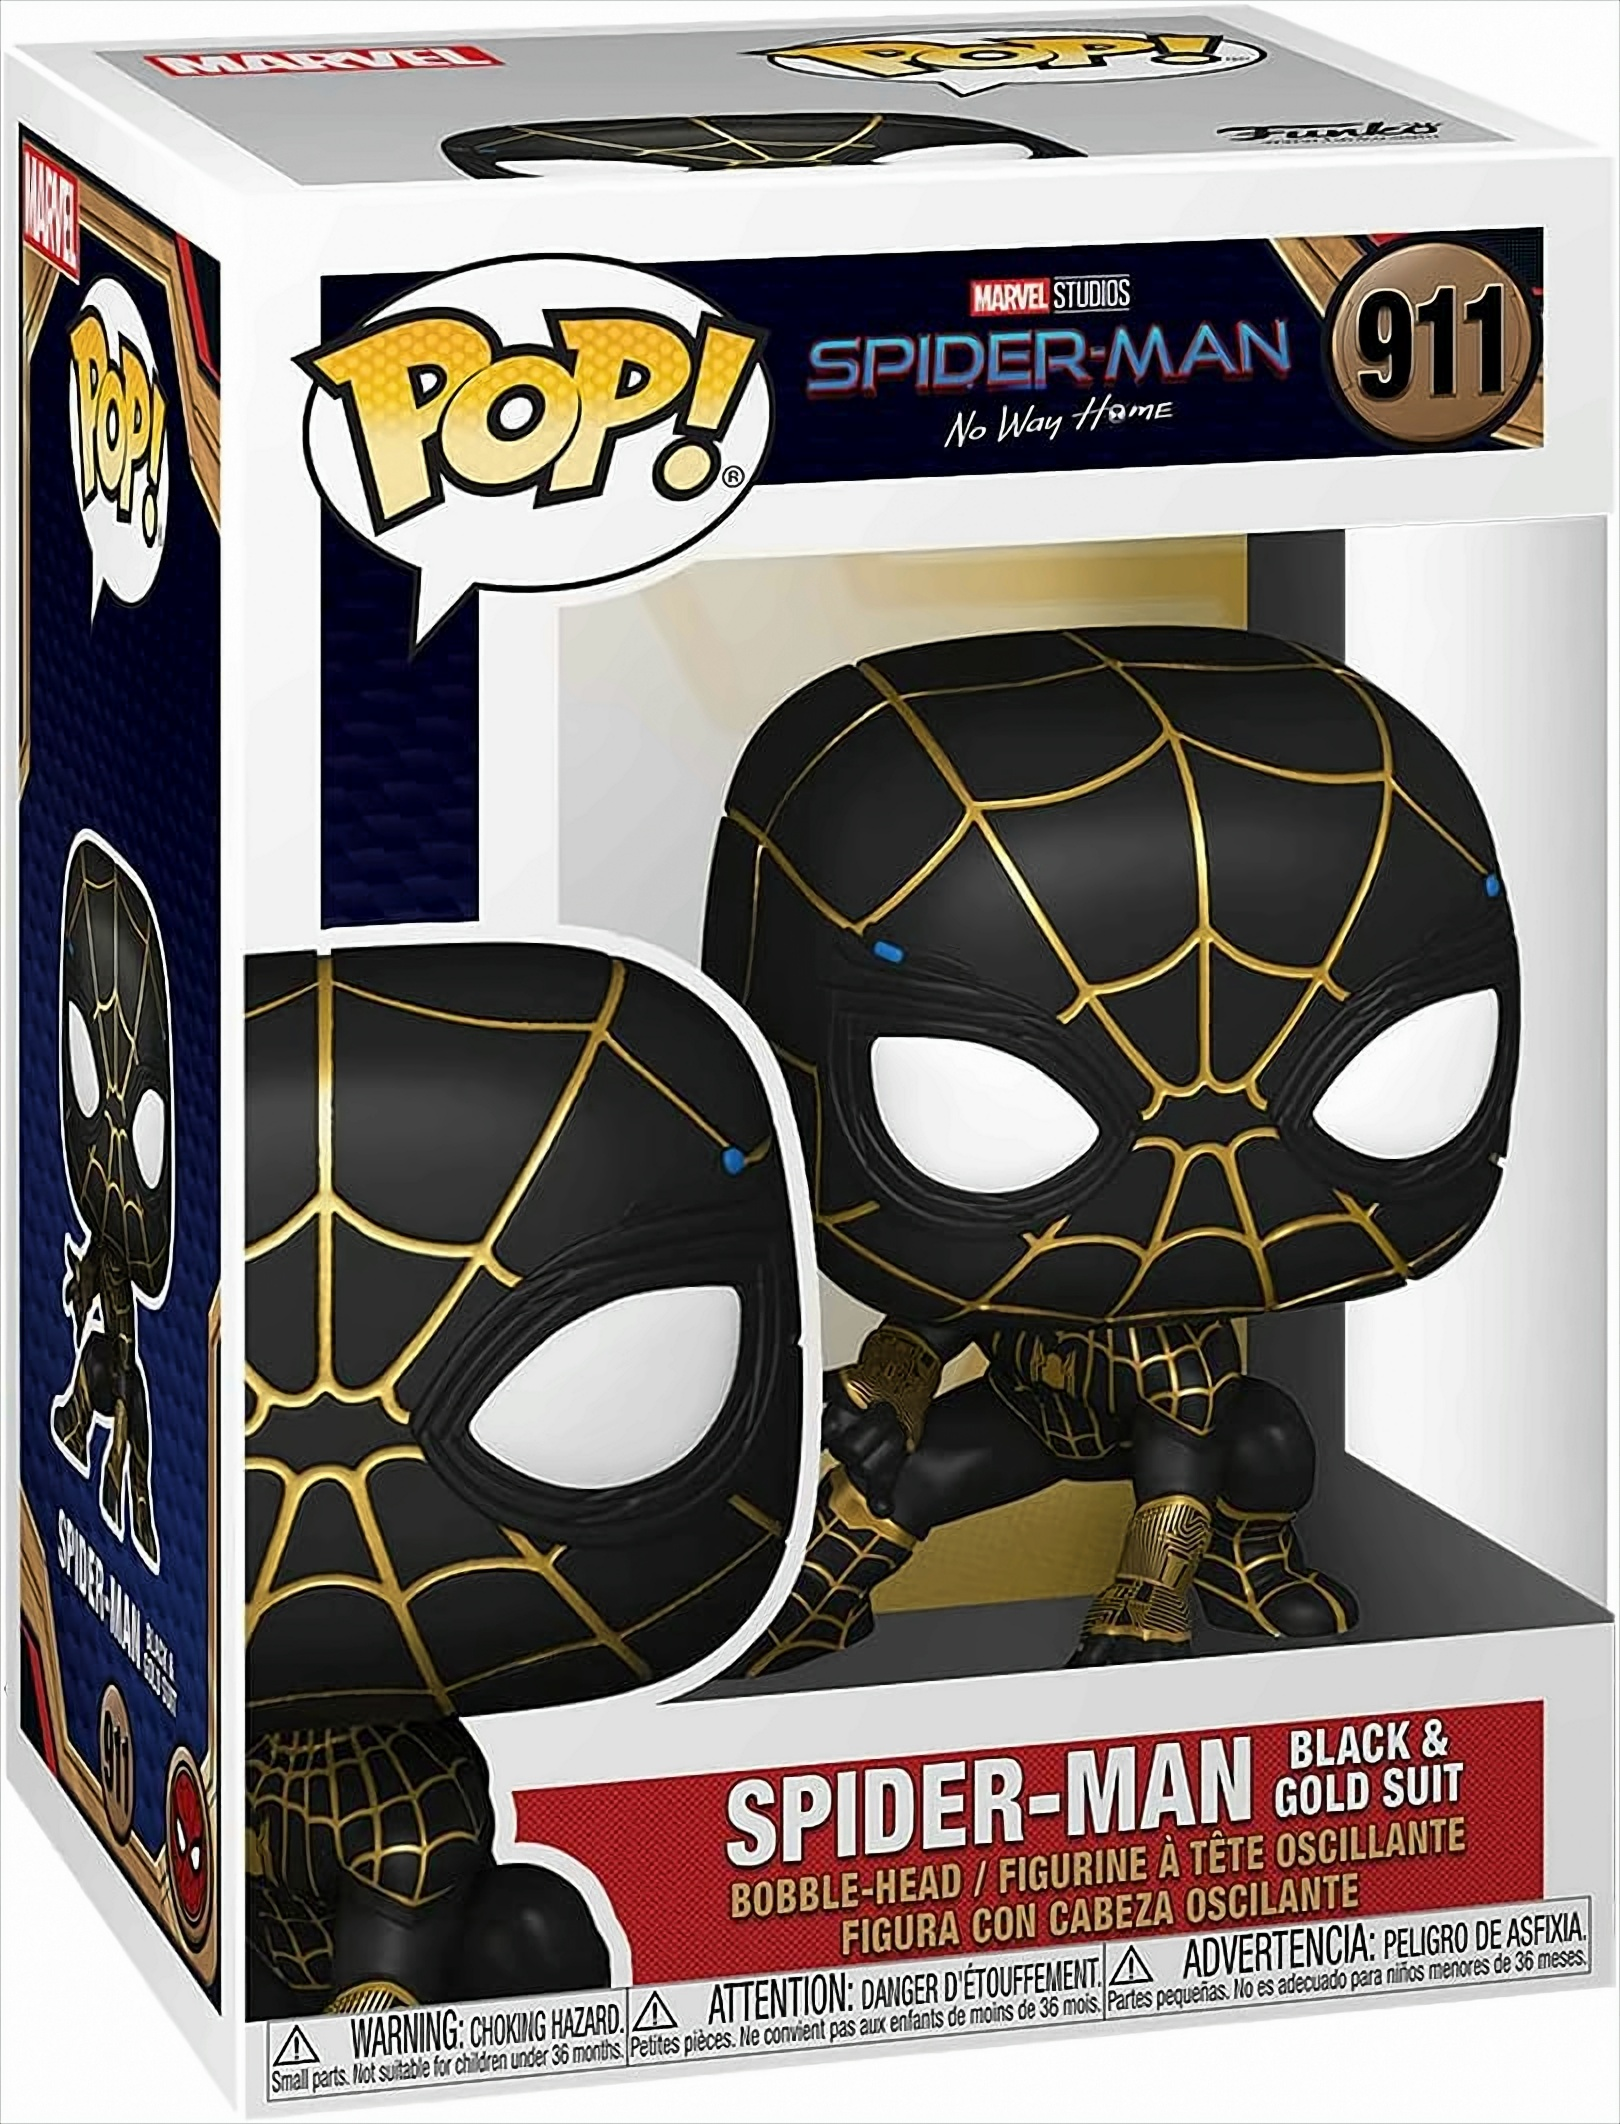 Suit No Marvel Black Spider-Man Way Gold Spider-Man POP Home & Funko